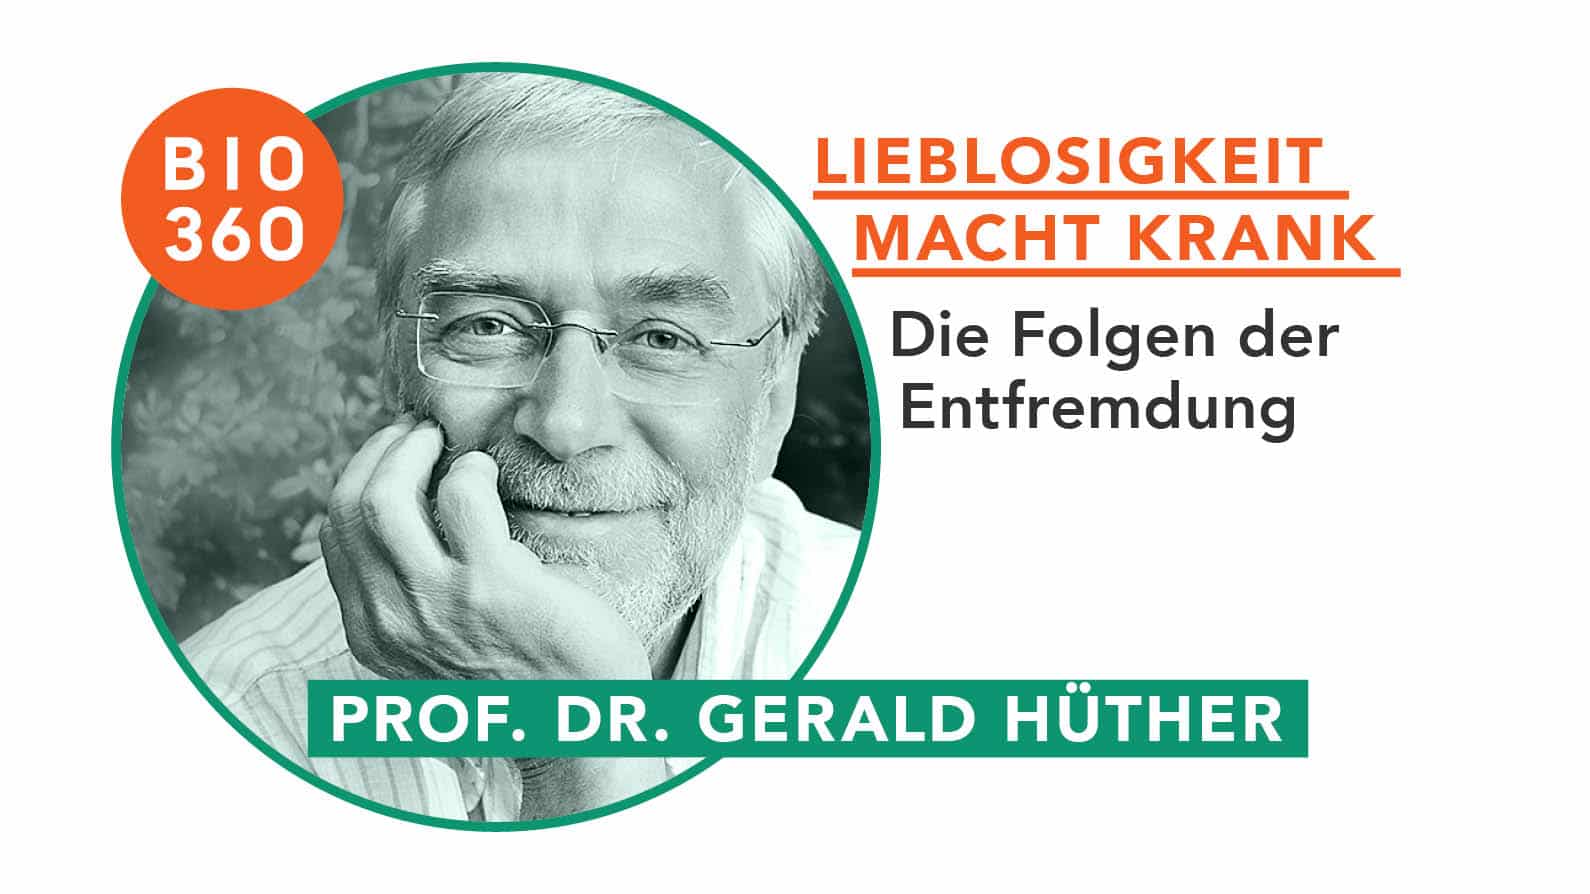 Lieblosigkeit macht krank : Prof. Dr. Gerald Hüther